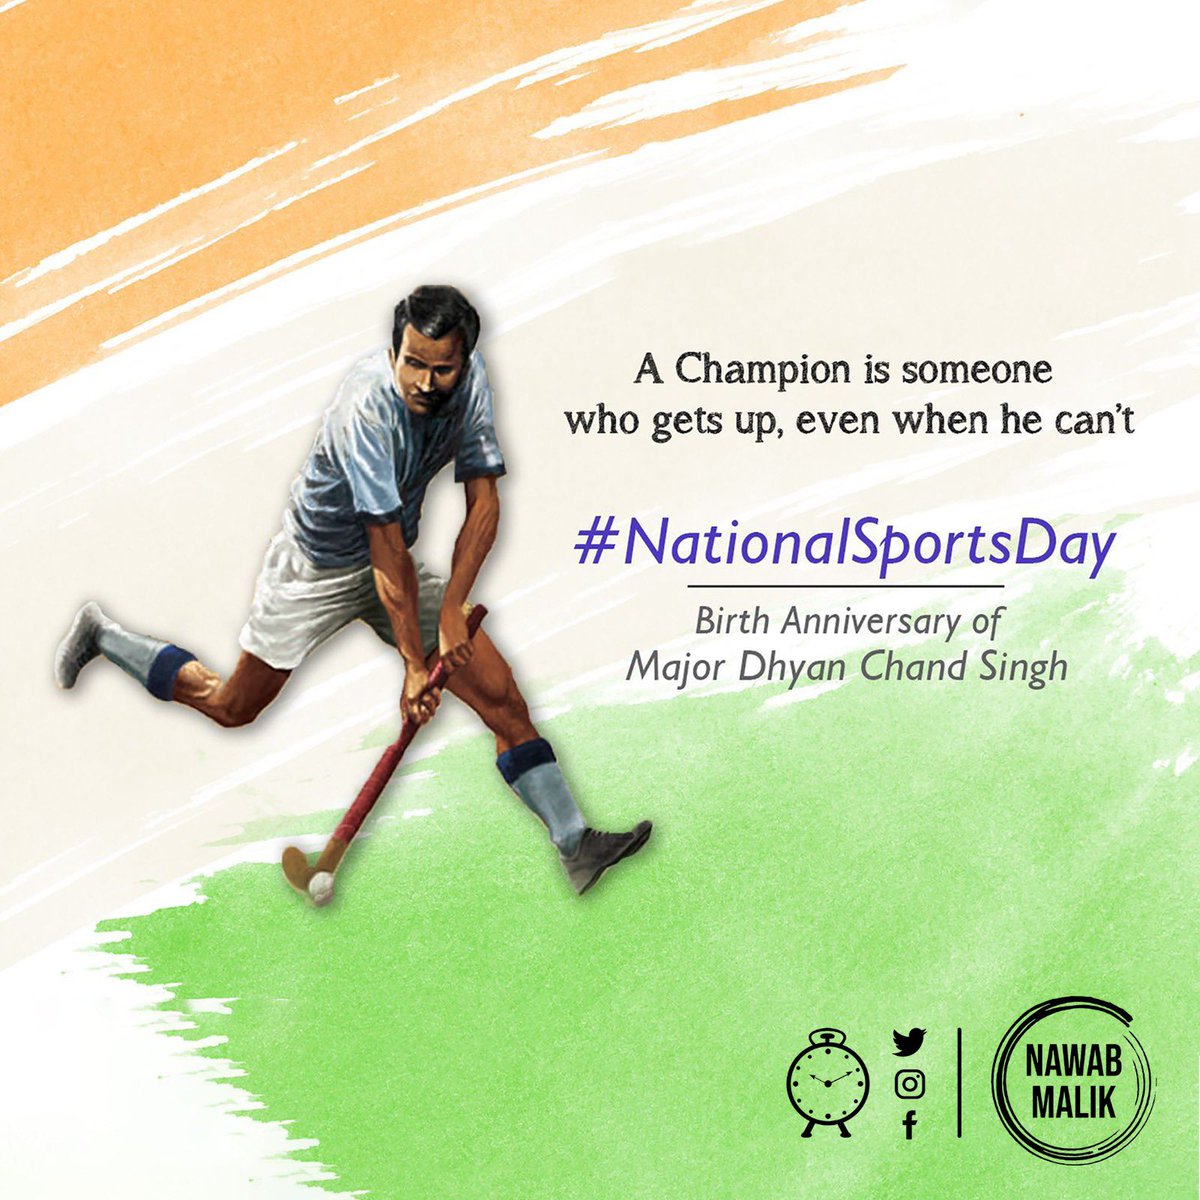 हॉकी के जादूगर कहे जाने वाले विश्व हॉकी के खिलाड़ी मेजर ध्यानचंद जी की जयंती पर शत्-शत् नमन। साथ ही सभी खिलाड़ियों को राष्ट्रीय खेल दिवस की हार्दिक शुभकामनाएं। #NationalSportsDay